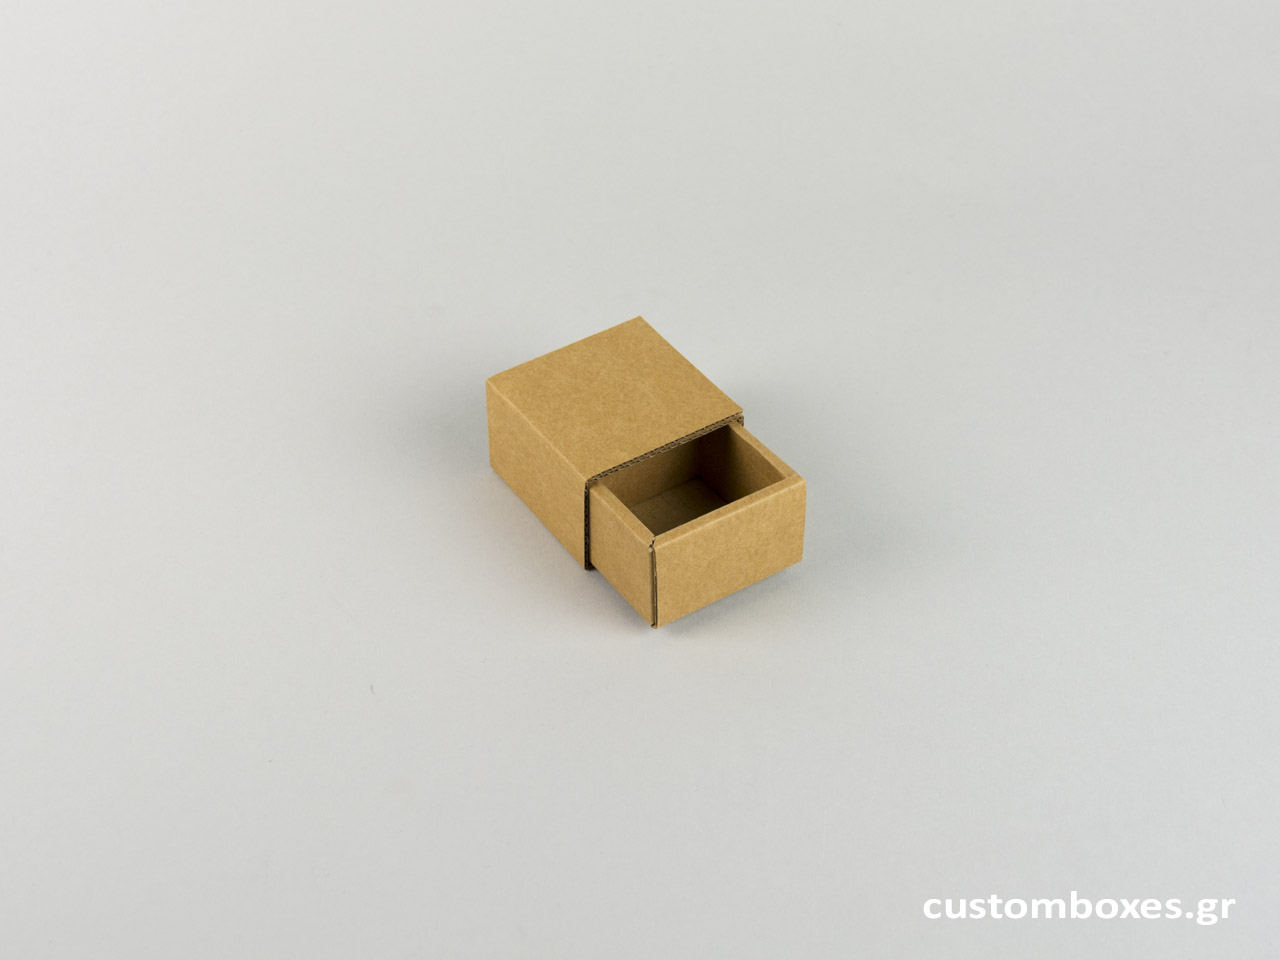 Κουτί kraft συρταρωτό για μικρό δαχτυλίδι